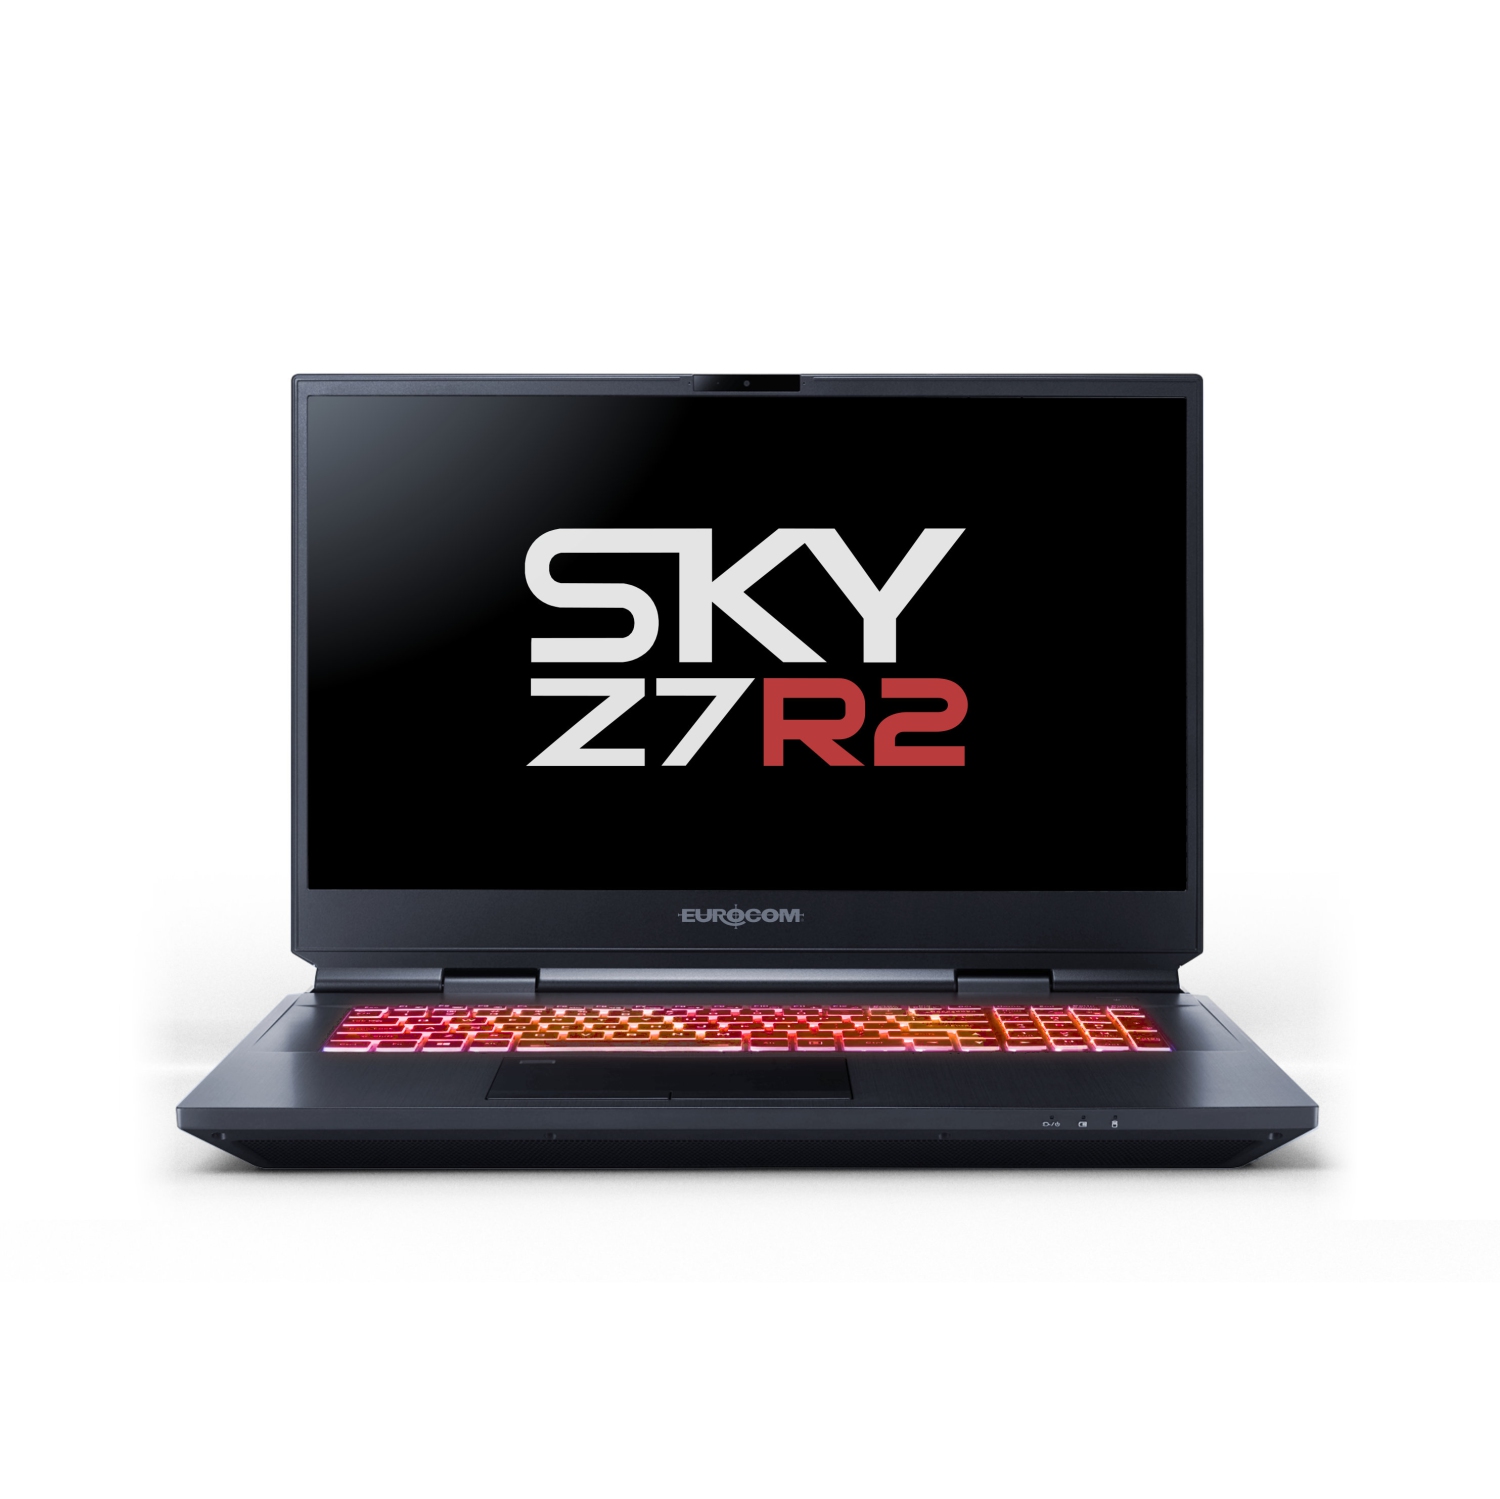 Eurocom Sky Z7 R2 17.3 inch Mobile Workstation-Intel i9-10900K/Nvidia GeForce RTX 3070/500GB SSD/1TB SSD/ 32GB RAM/Windows 10